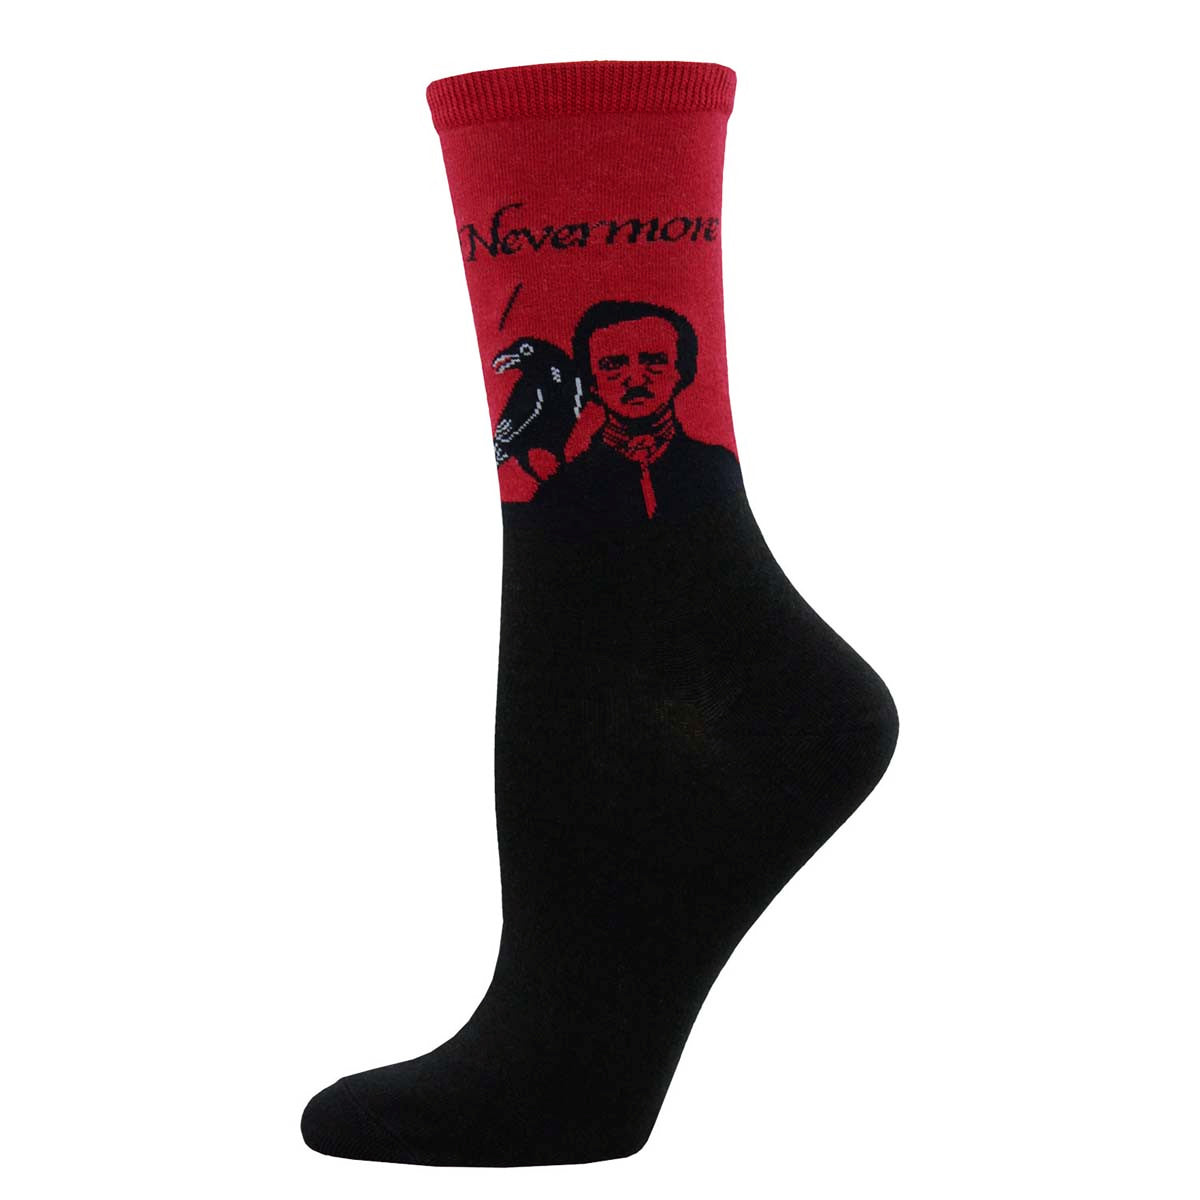 Edgar Allan Poe 'Nevermore' Women's Socks